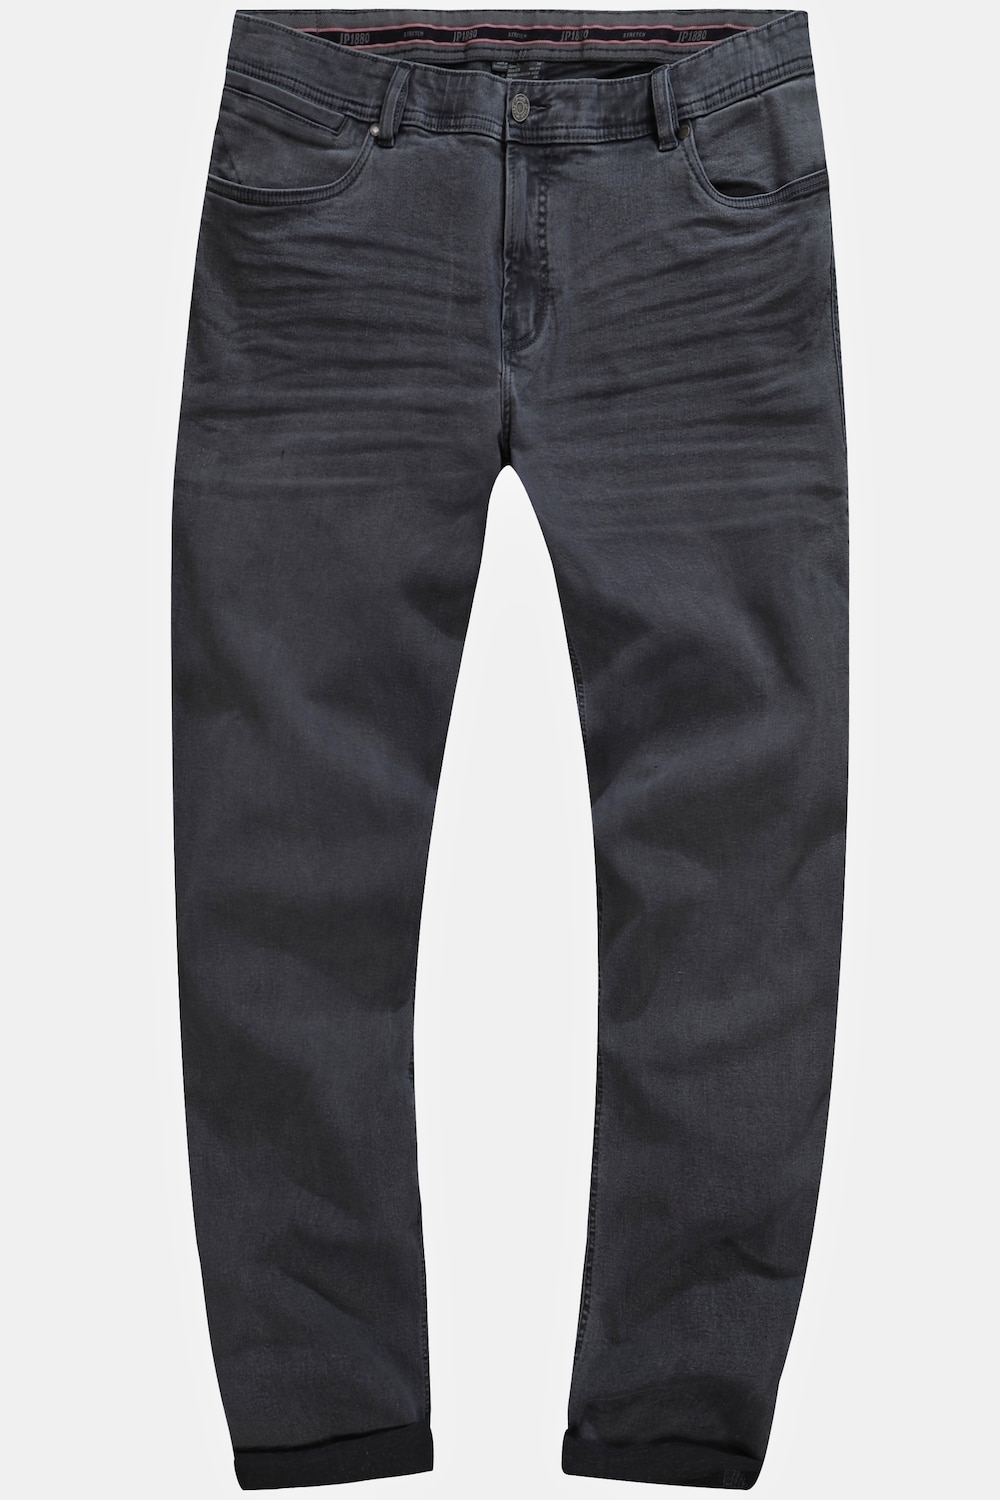 Grote Maten Jeans, Heren, grijs, Maat: 68, Katoen, JP1880